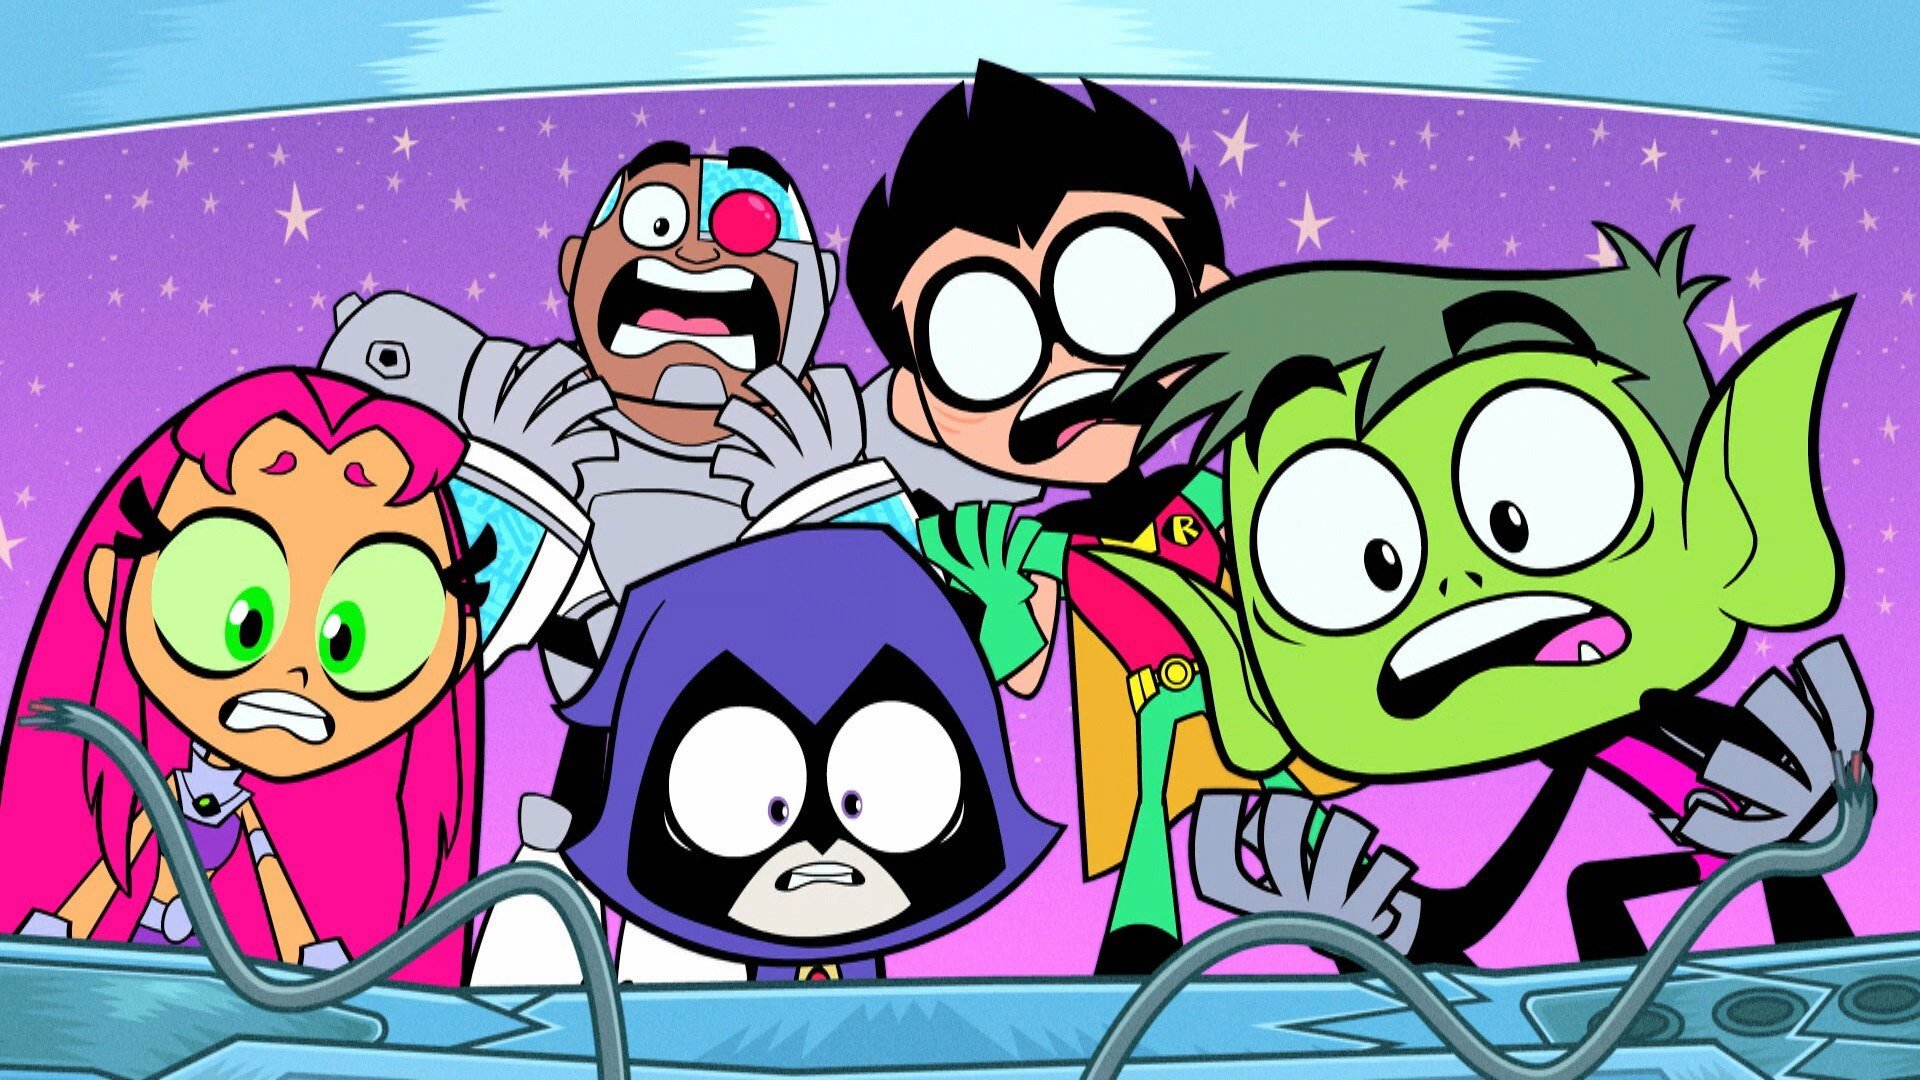 Watch Teen Titans Go! Season 4 Episode 11 Online - Stream Full Episodes